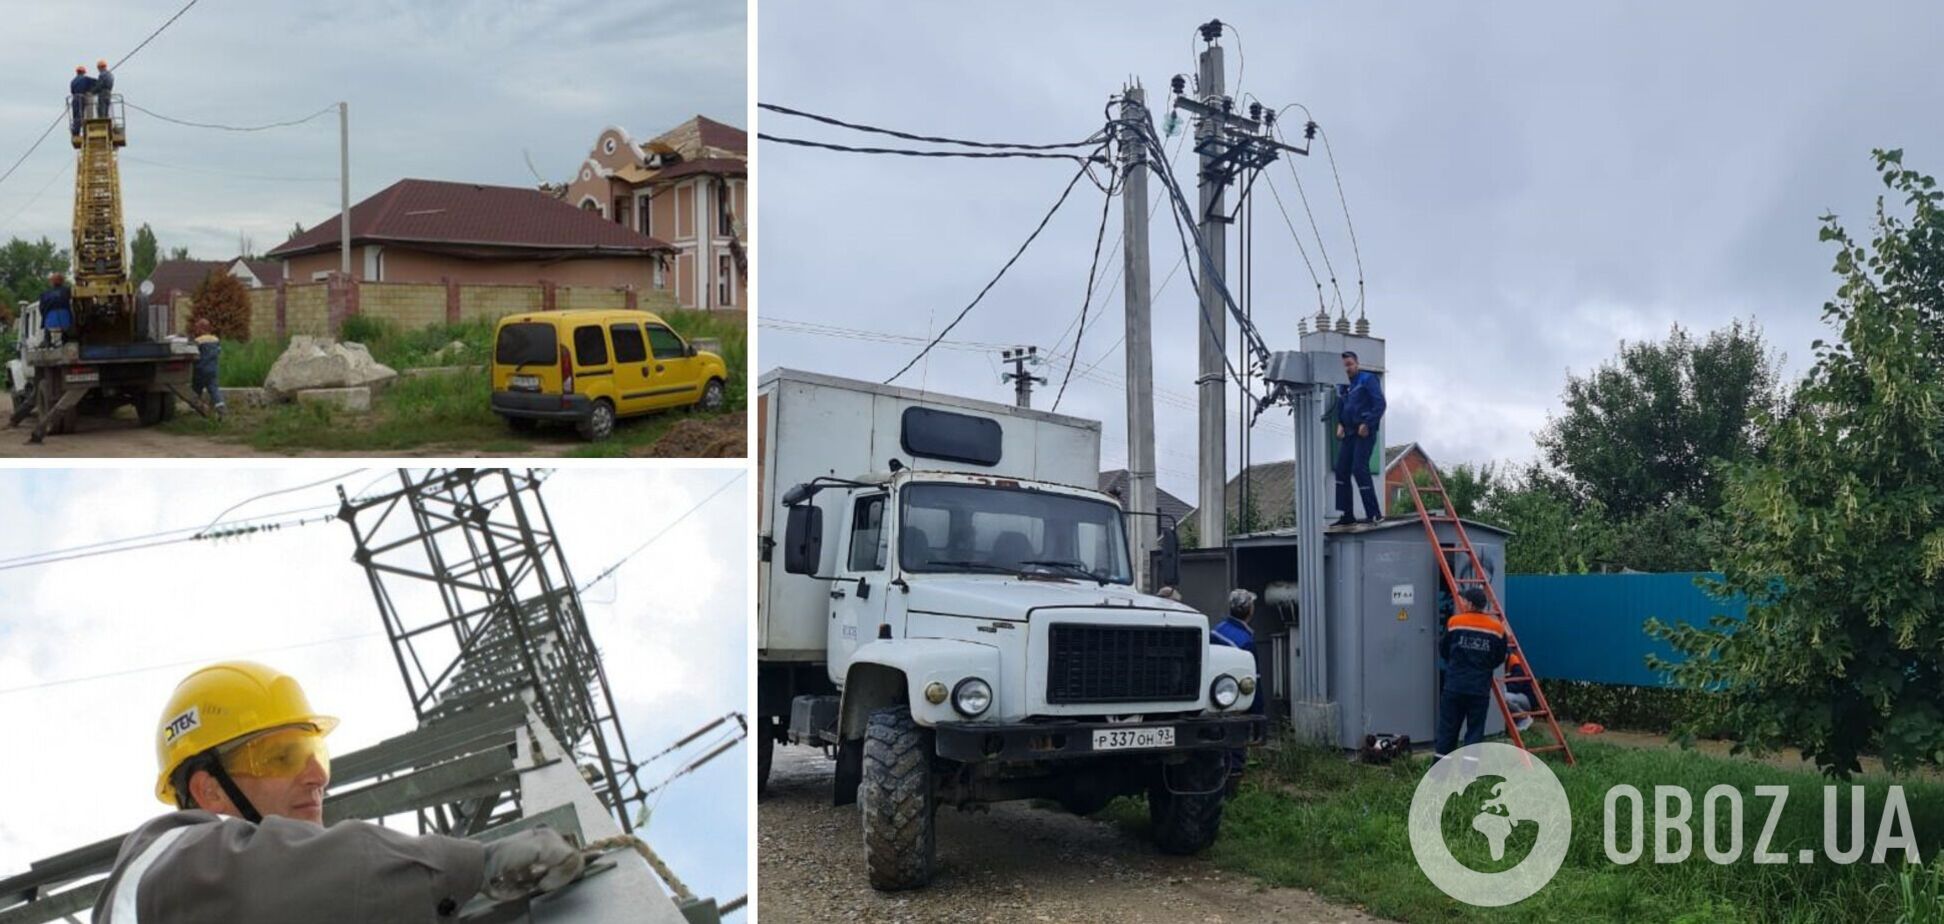 Енергетики ДПЕК та комунальні служби повернули світло у Слов'янськ – голова військової адміністрації